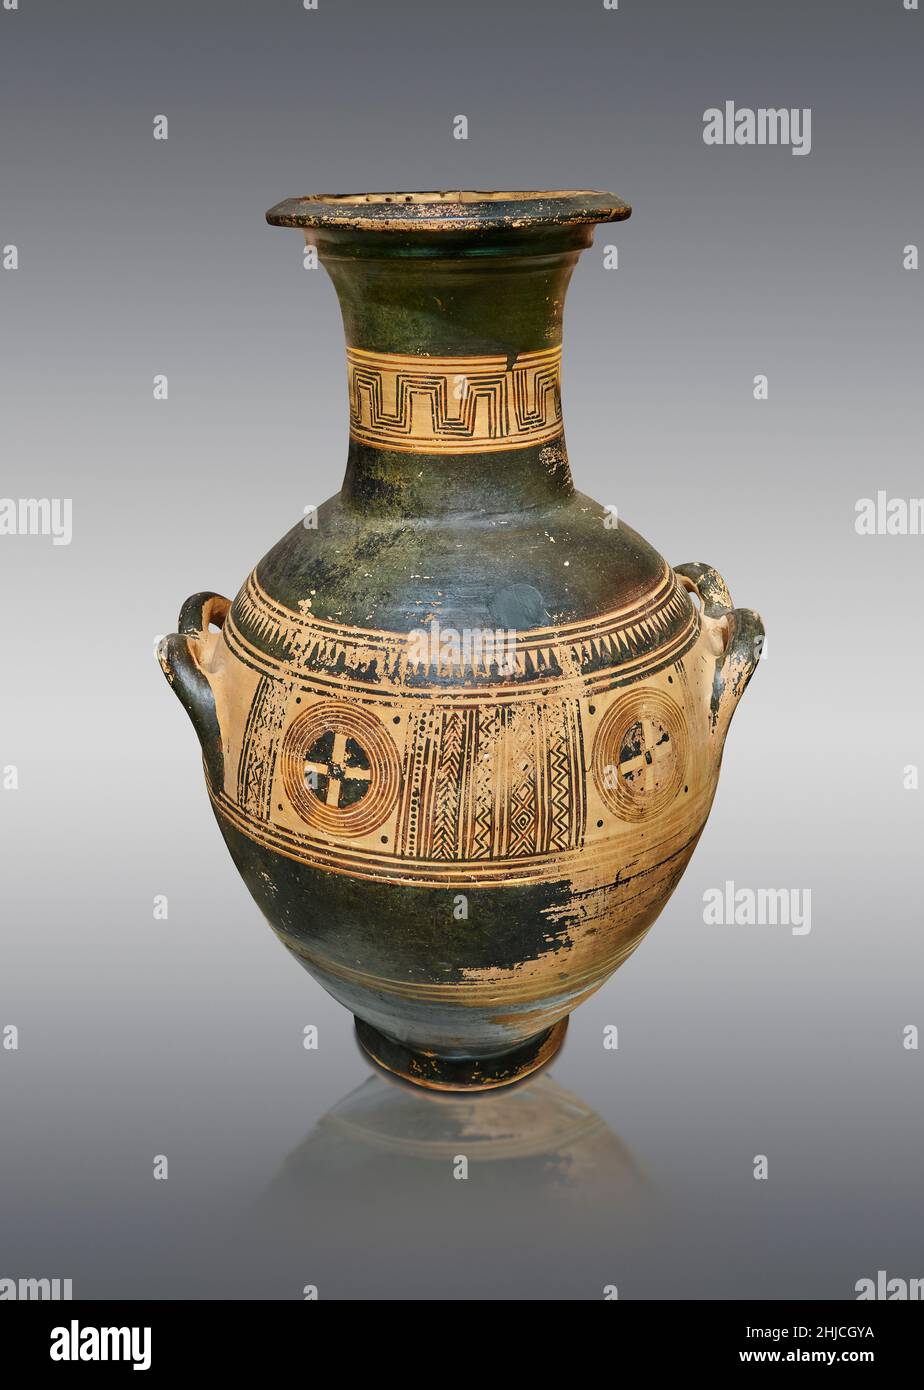 Período geométrico Amphora cerámica griega, Tiryns, 850-900 aC . Museo Arqueológico de Nafplion. : sobre fondo gris. Fotógrafo Paul E Williams. Foto de stock